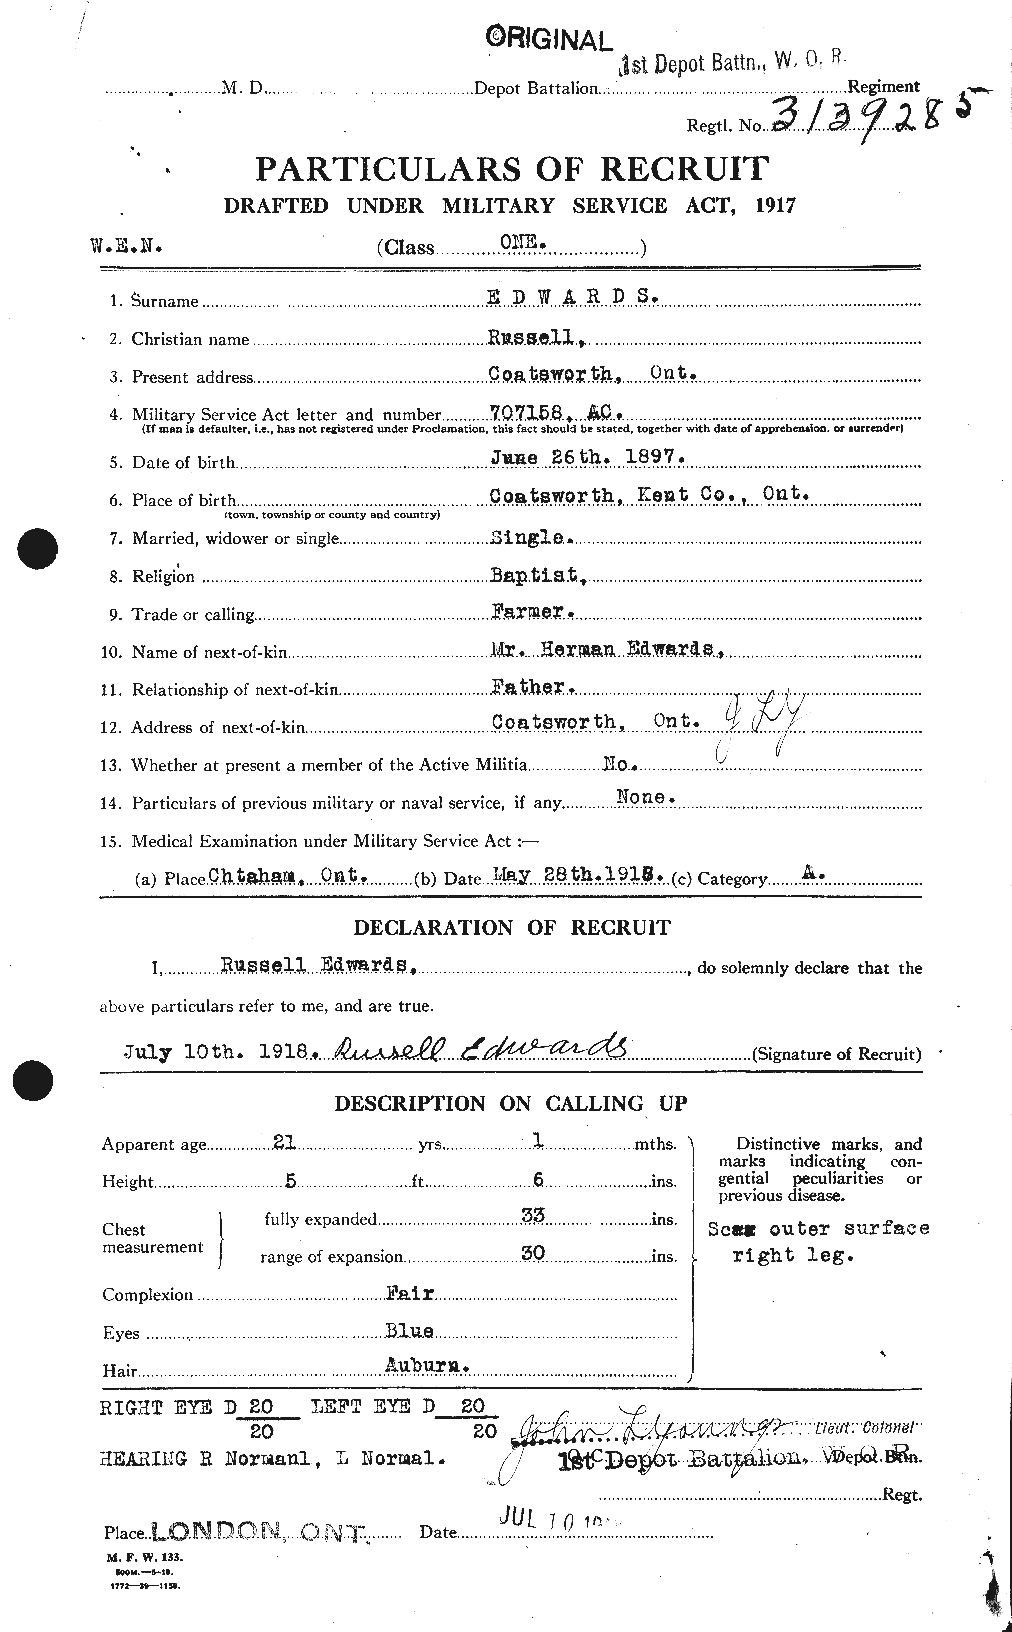 Dossiers du Personnel de la Première Guerre mondiale - CEC 310303a